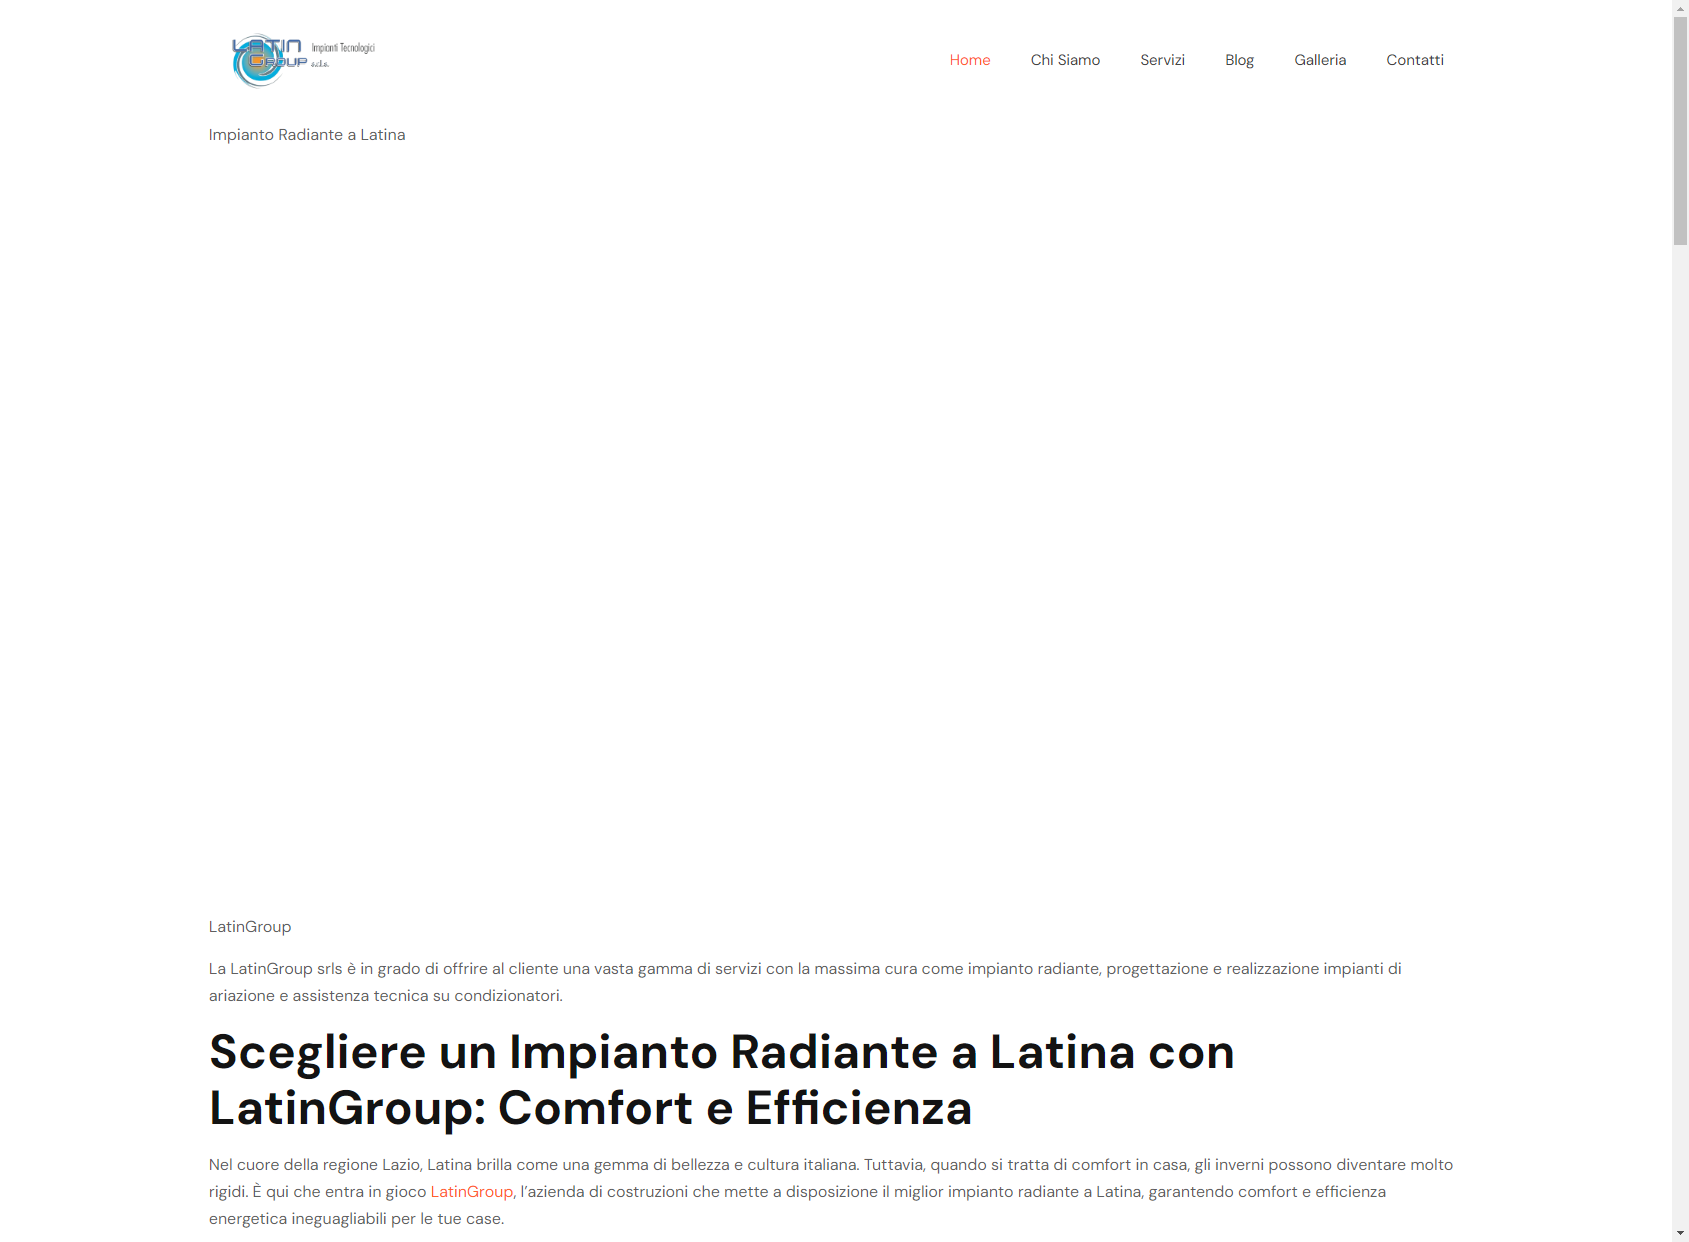 LatinGroup